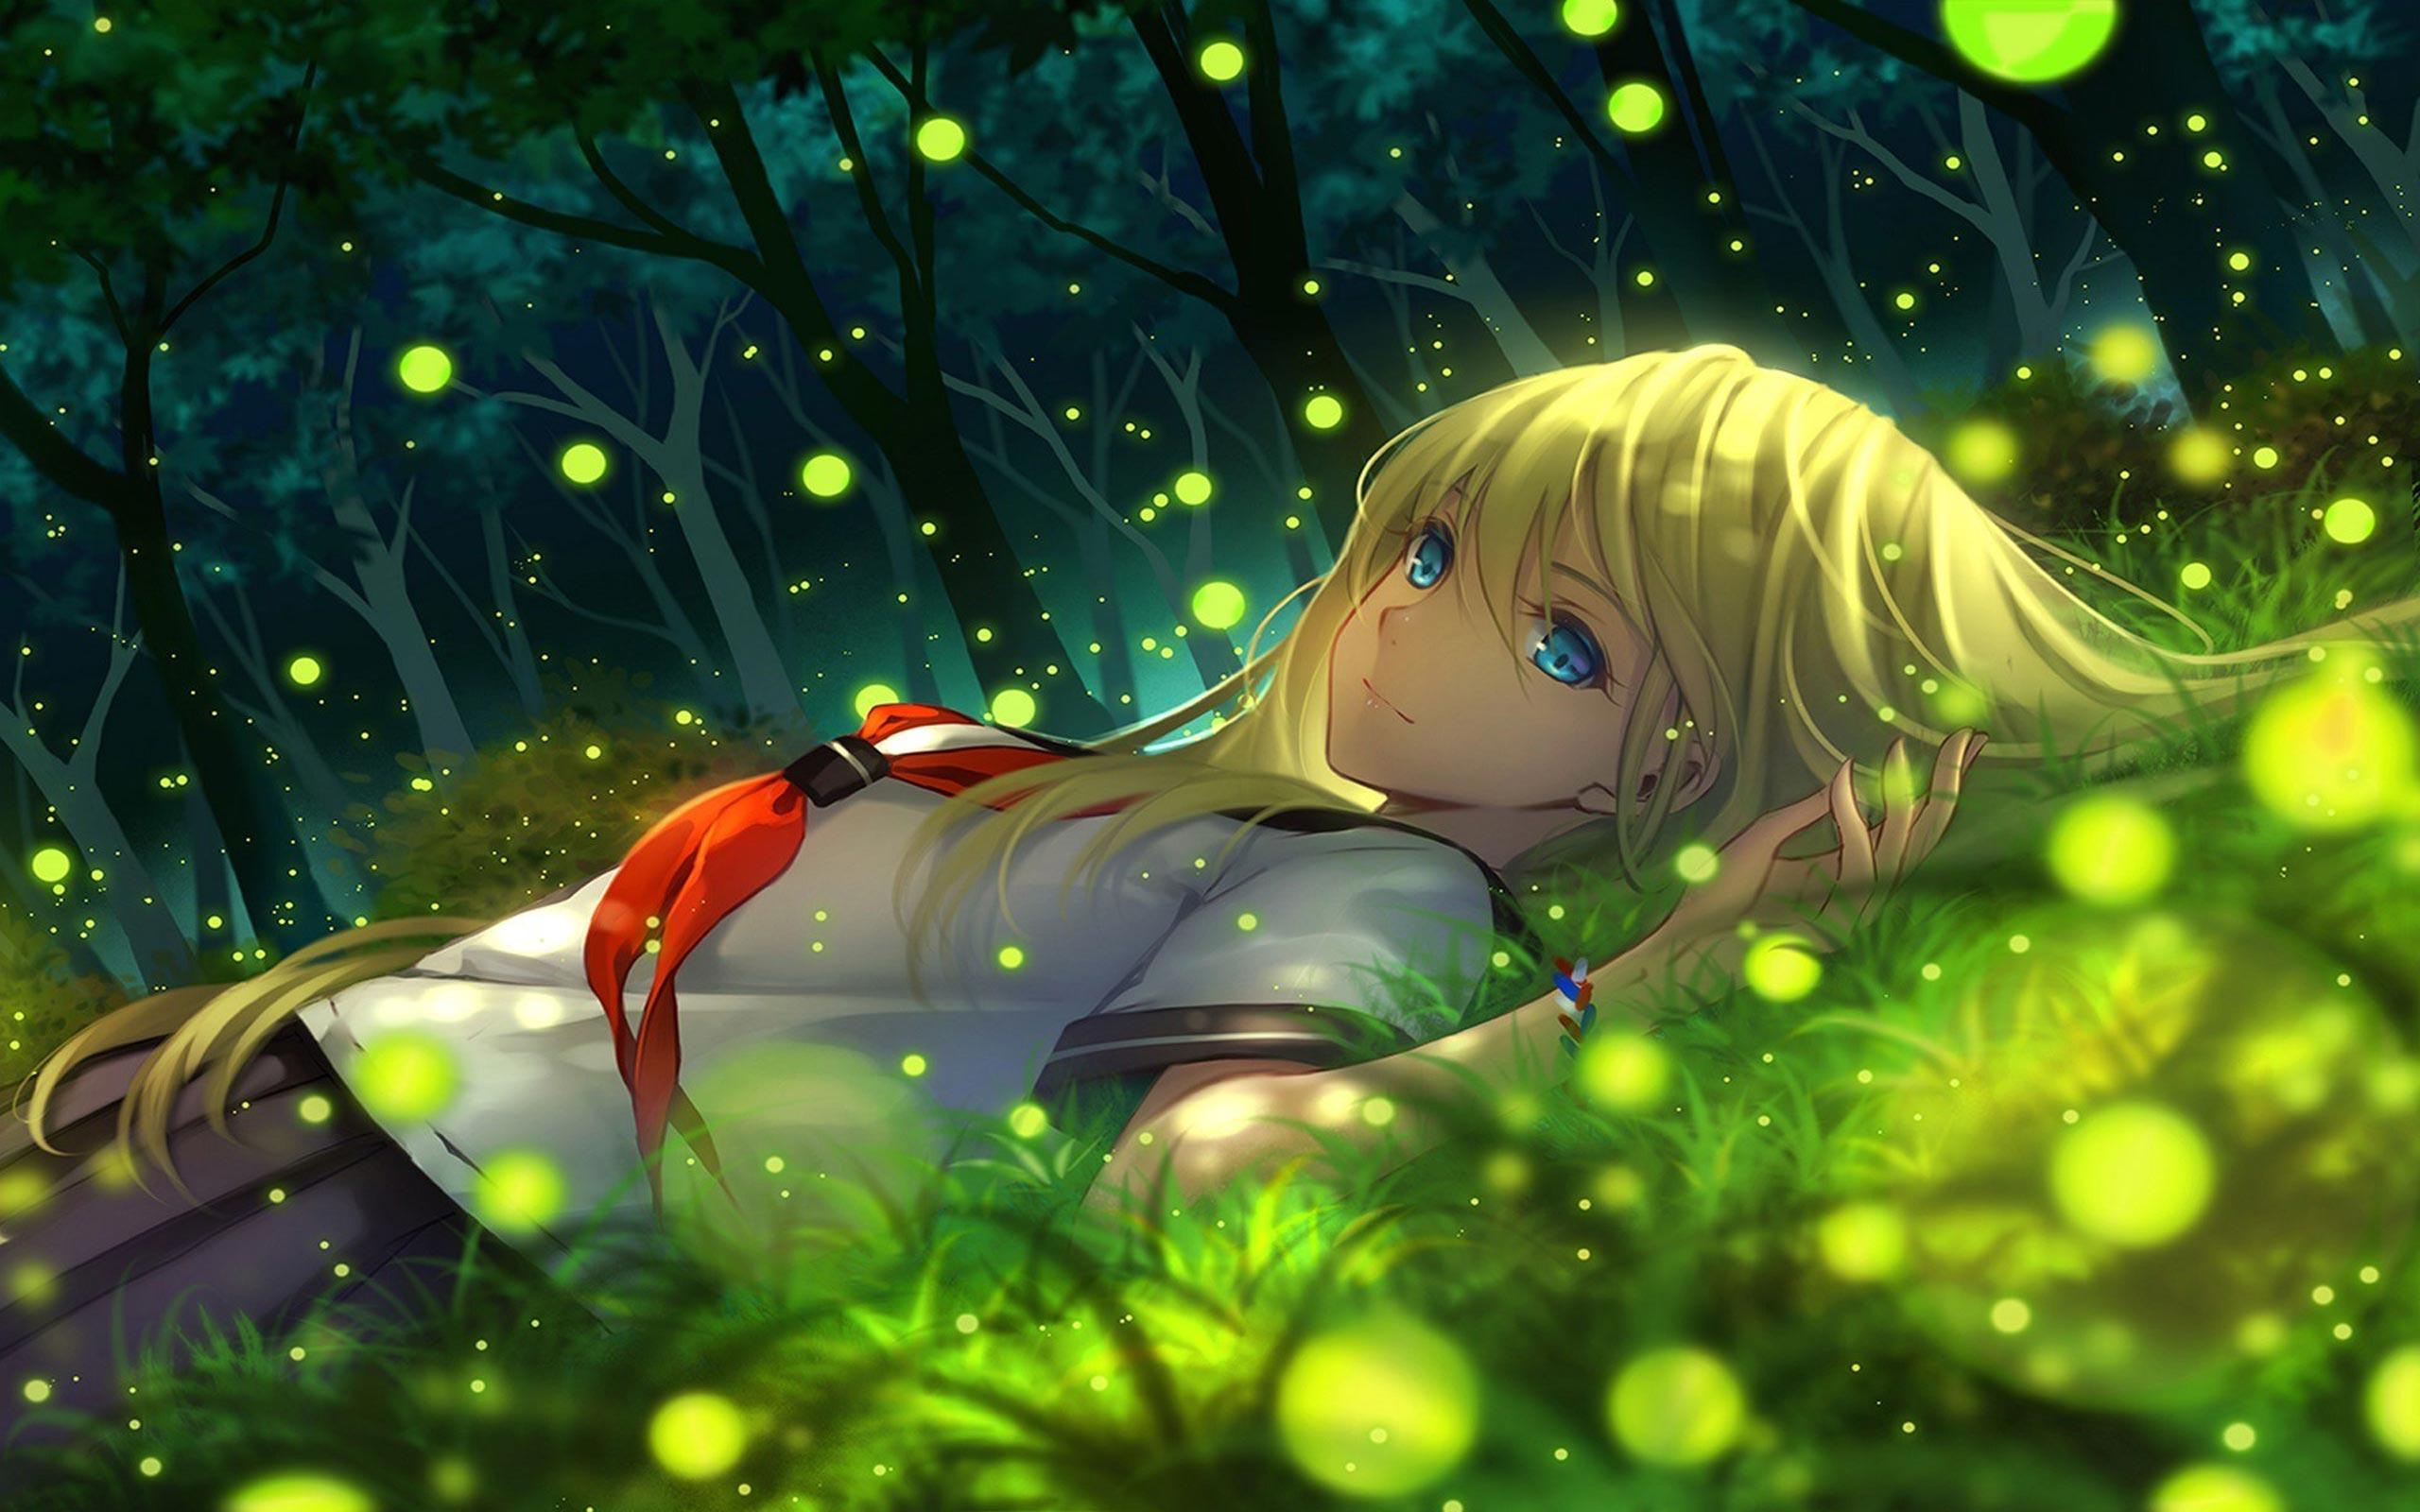 Anime Garden Wallpapers - Top Free Anime Garden Backgrounds